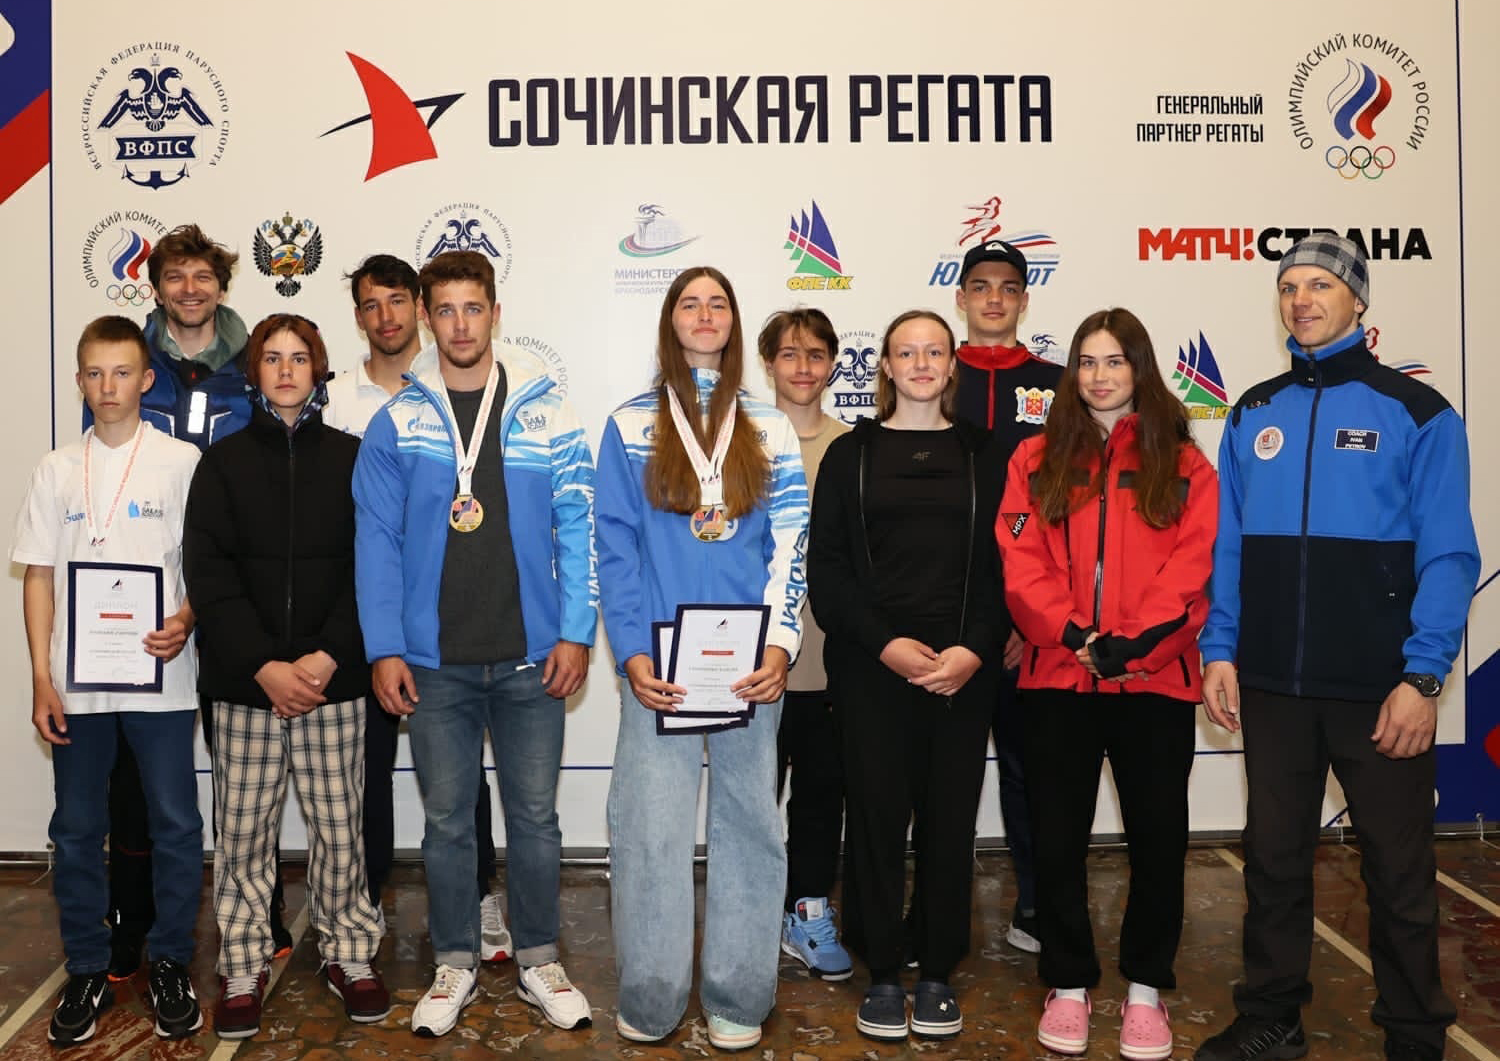 Первый этап Кубка России и Сочинская регата проходили с 25 по 29 марта на акватории Черного моря.